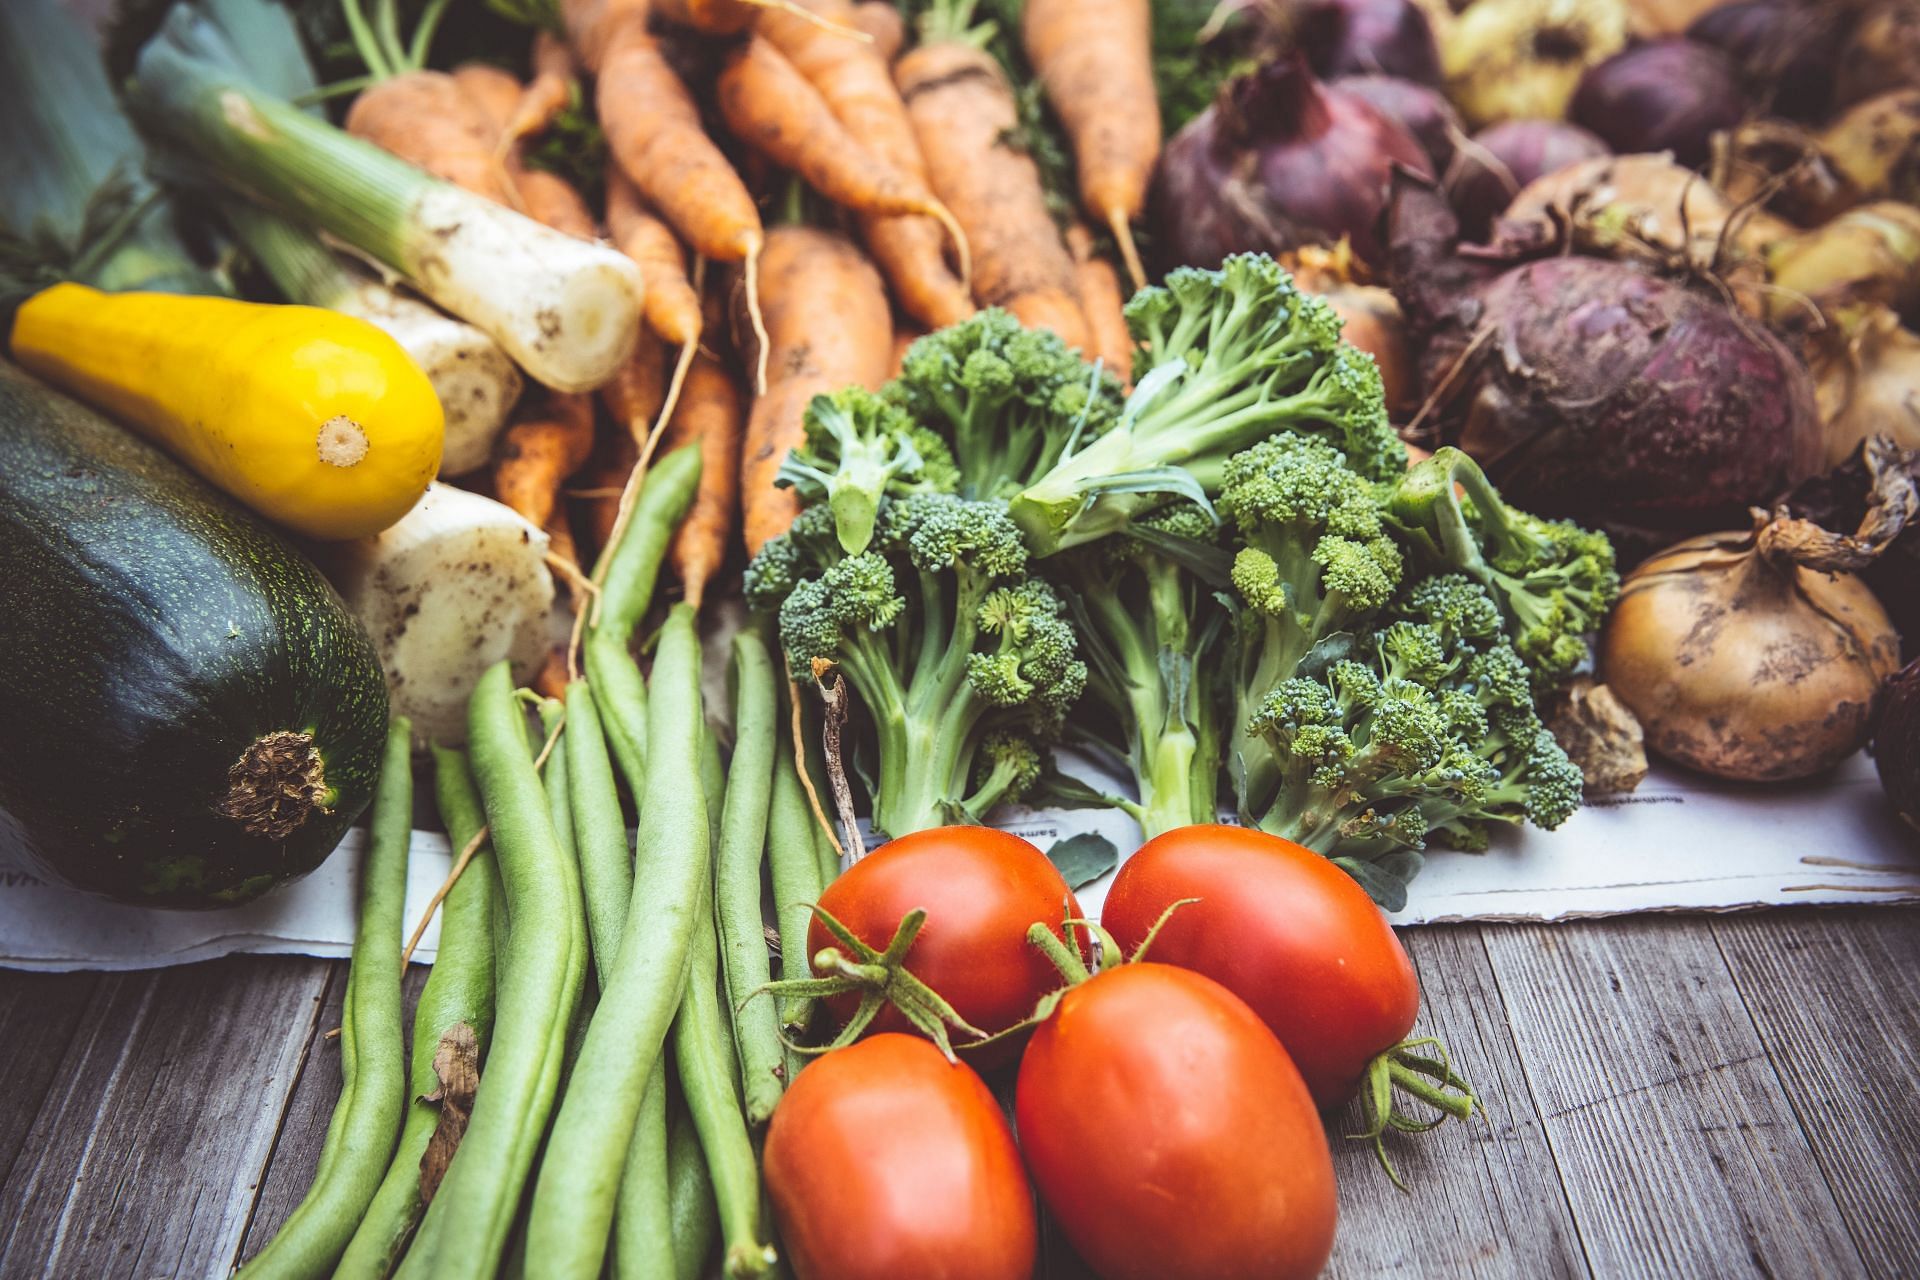 Fresh green vegetables should be included in a high-fiber diet. (Image via Unsplash/Markus Spiske)